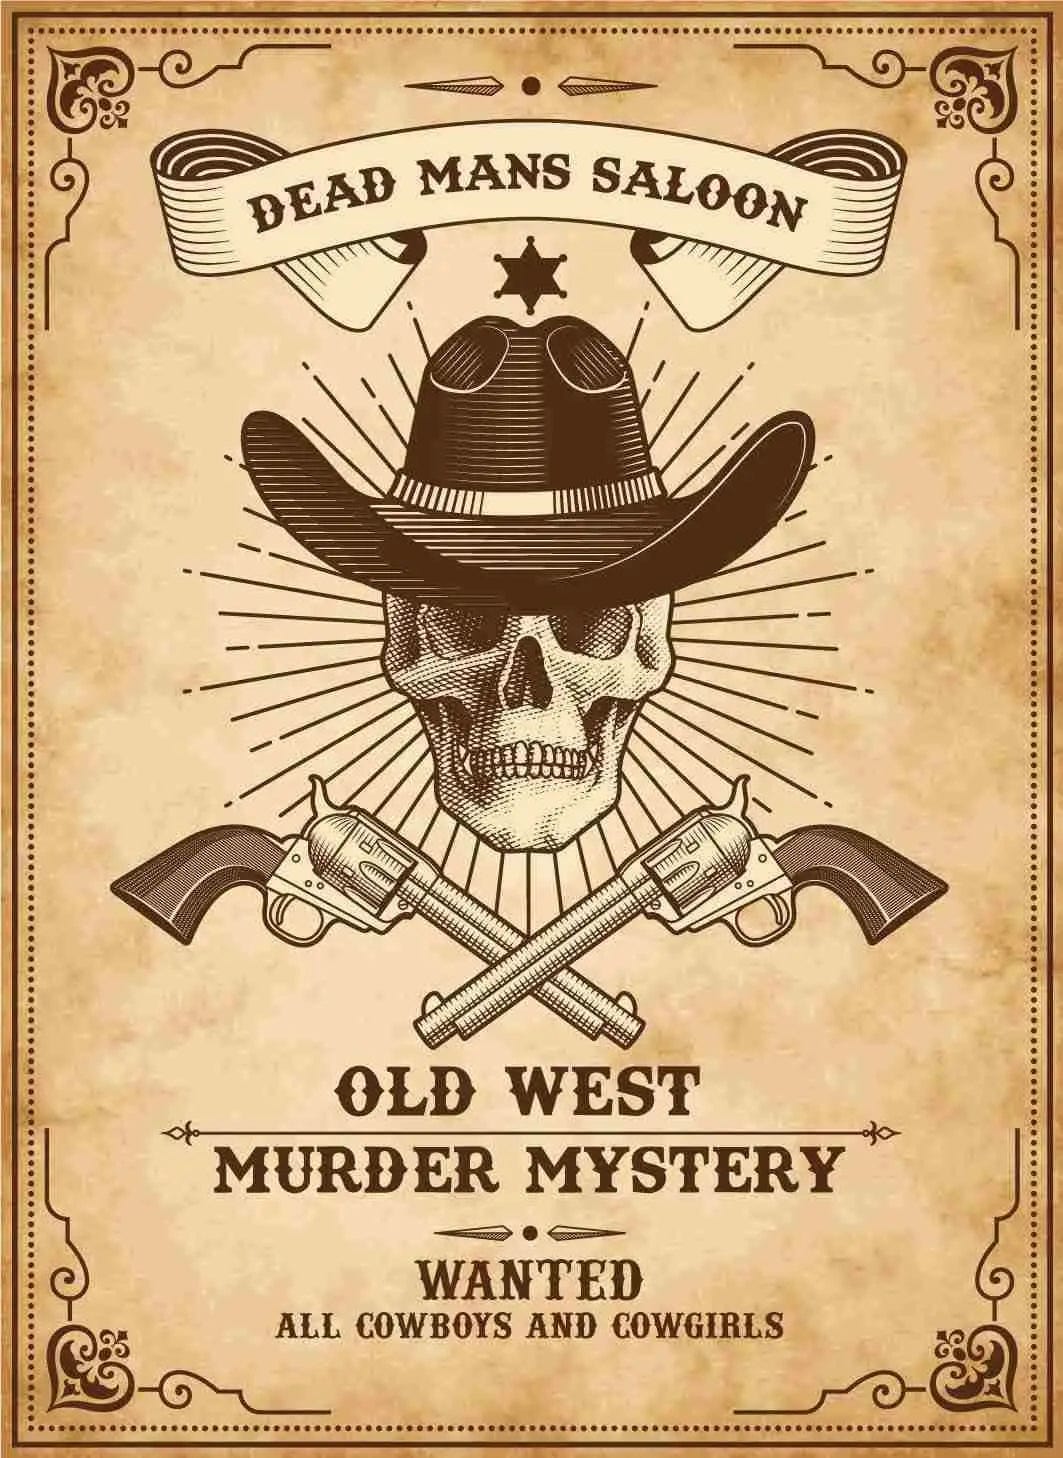 Erweiterungspaket – Hosten Sie Ihr eigenes Krimi-Spielset mit Wild-West-Cowboy-Thema